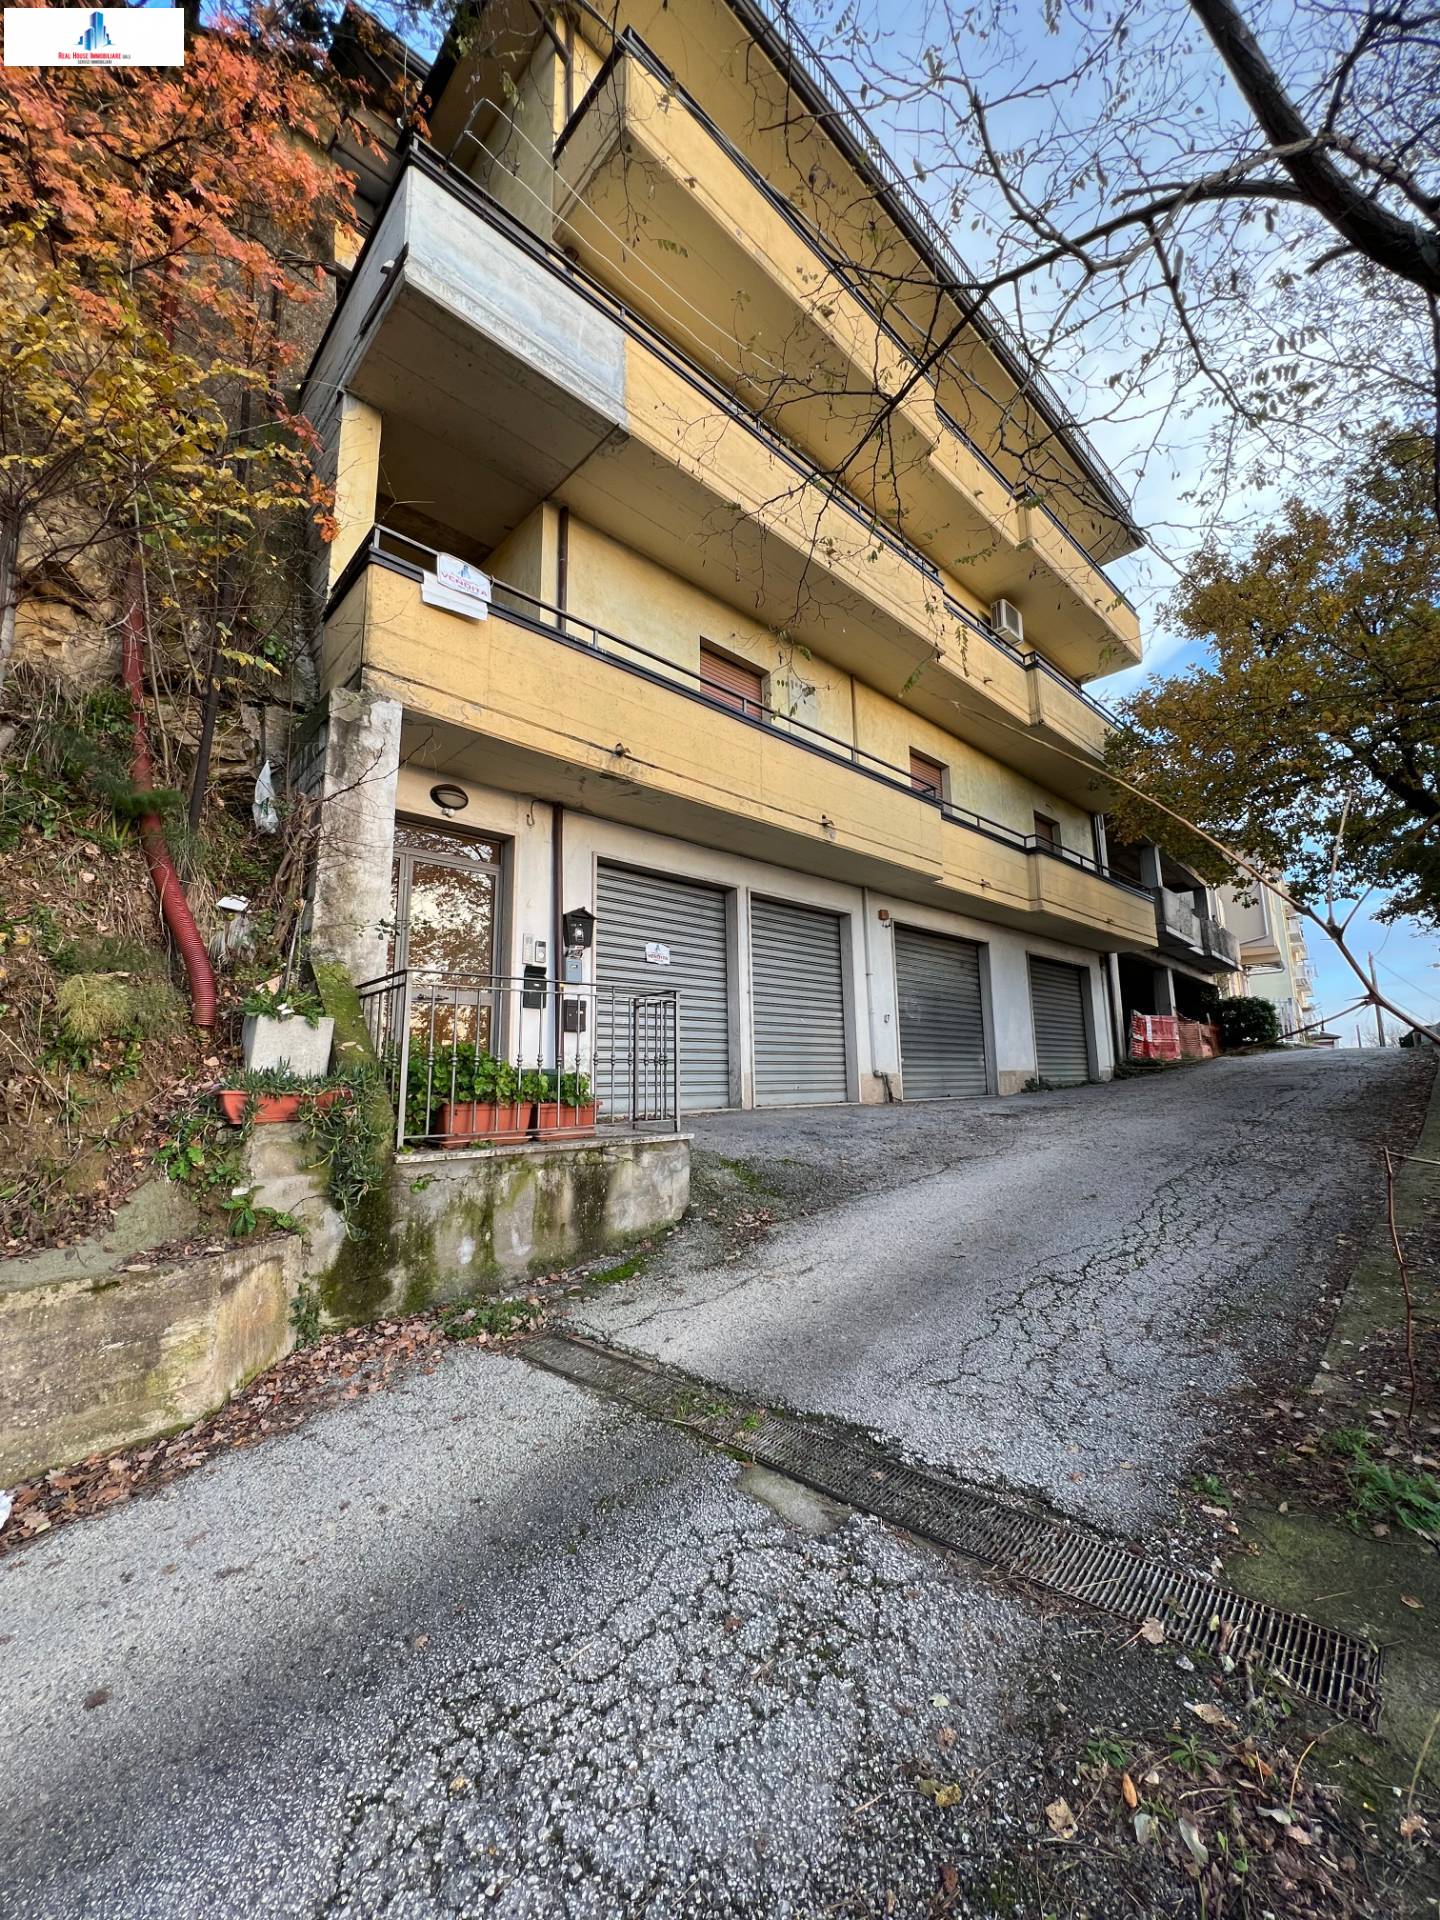 Appartamento in vendita, Ariano Irpino rione s. pietro